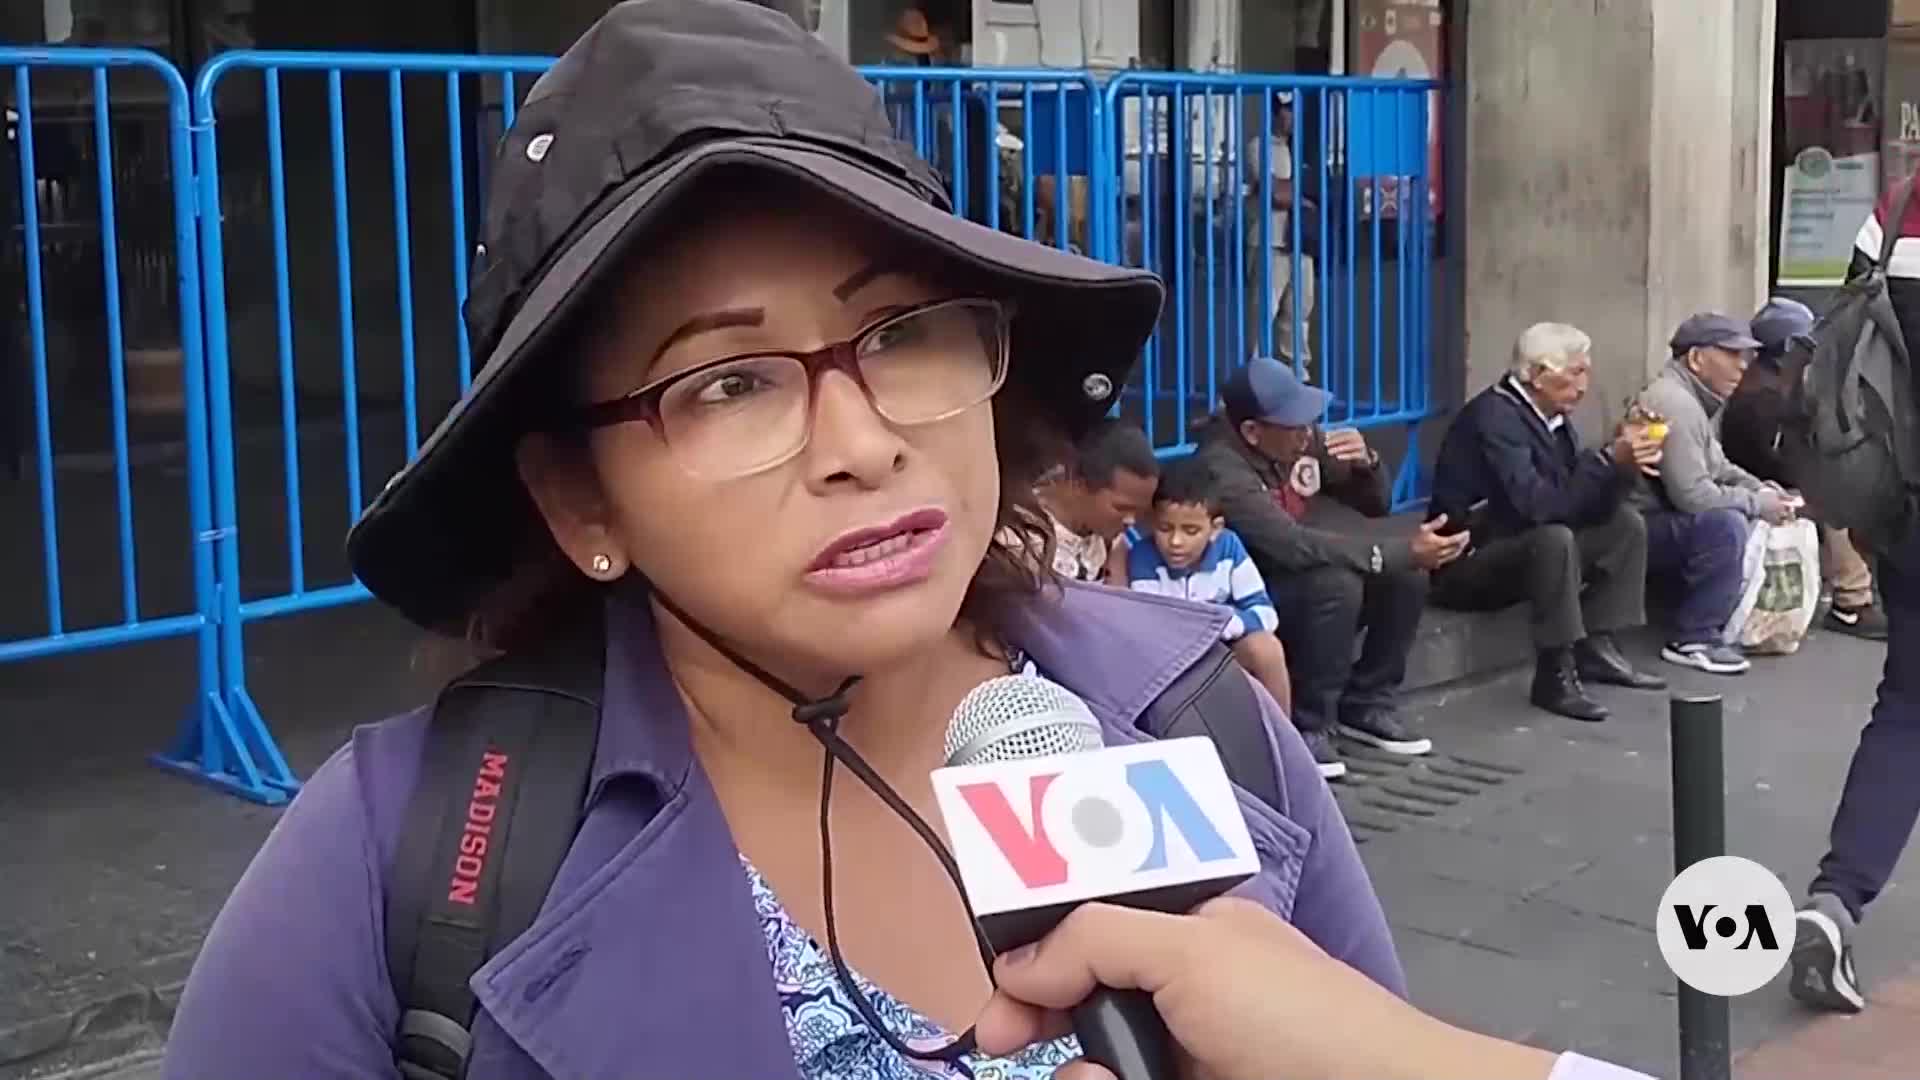 Ecuador violence crisis